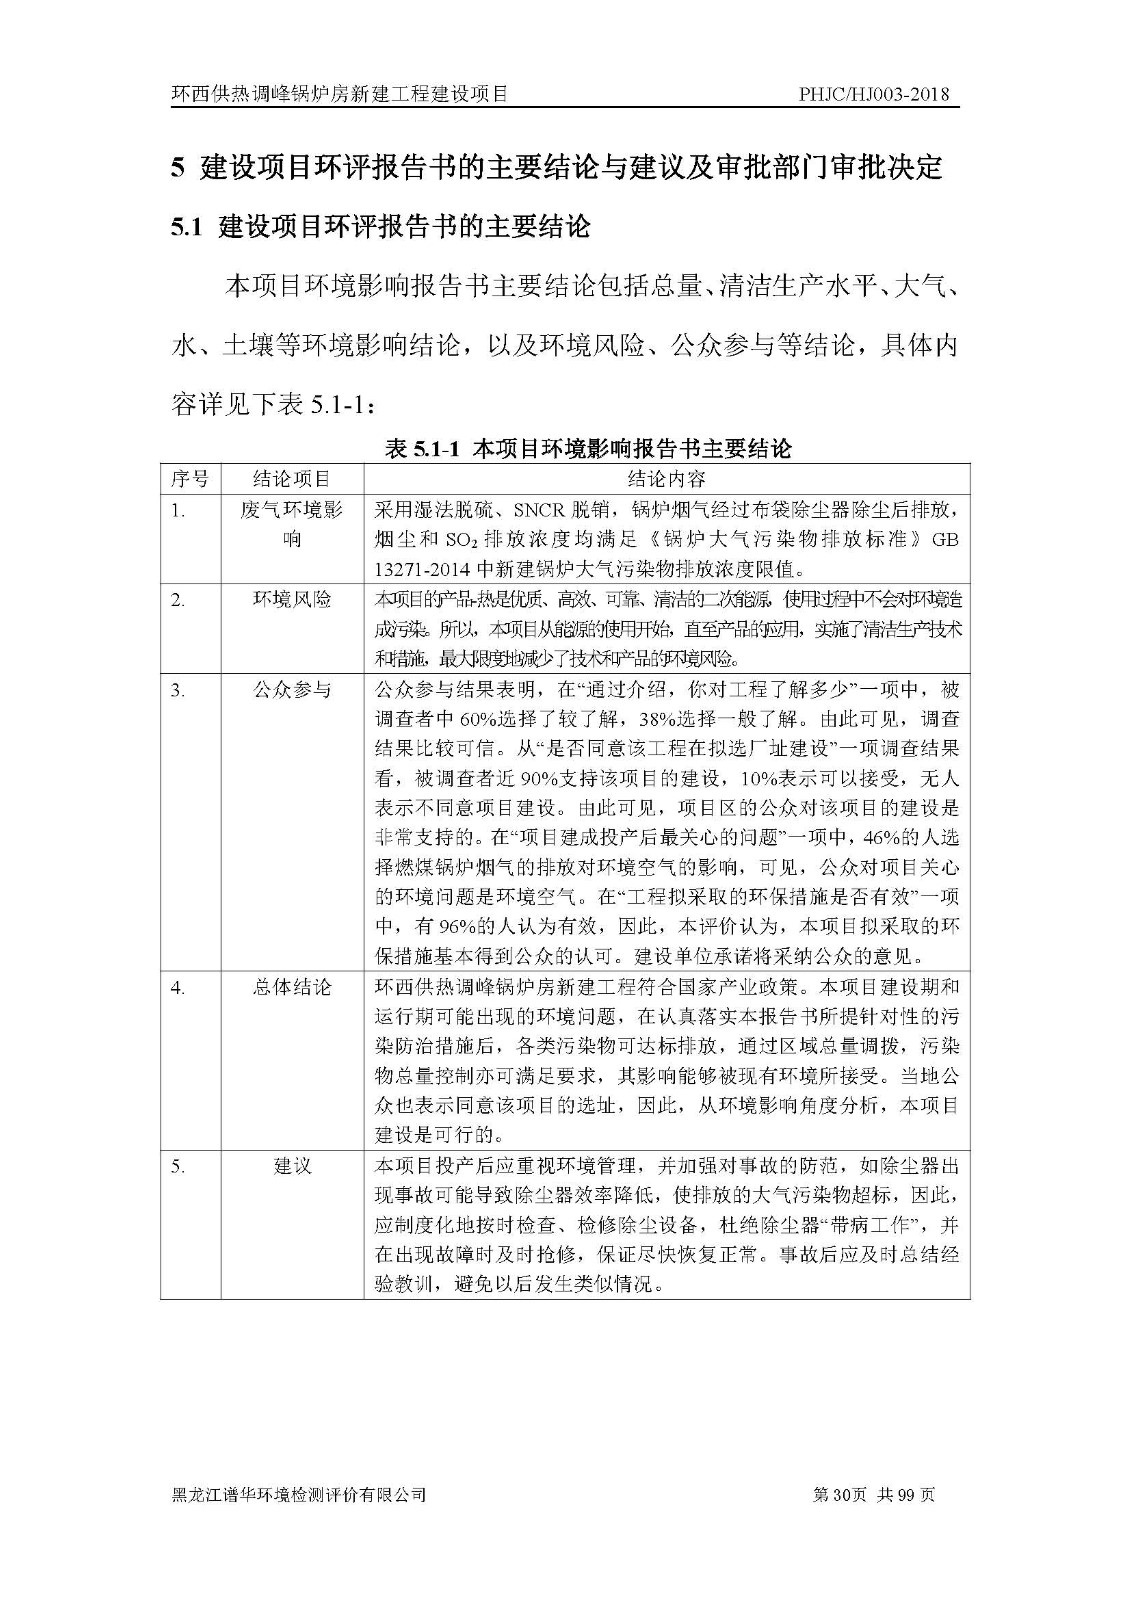 2018年项目公示|典型案例-黑龙江谱华环境检测评价有限公司